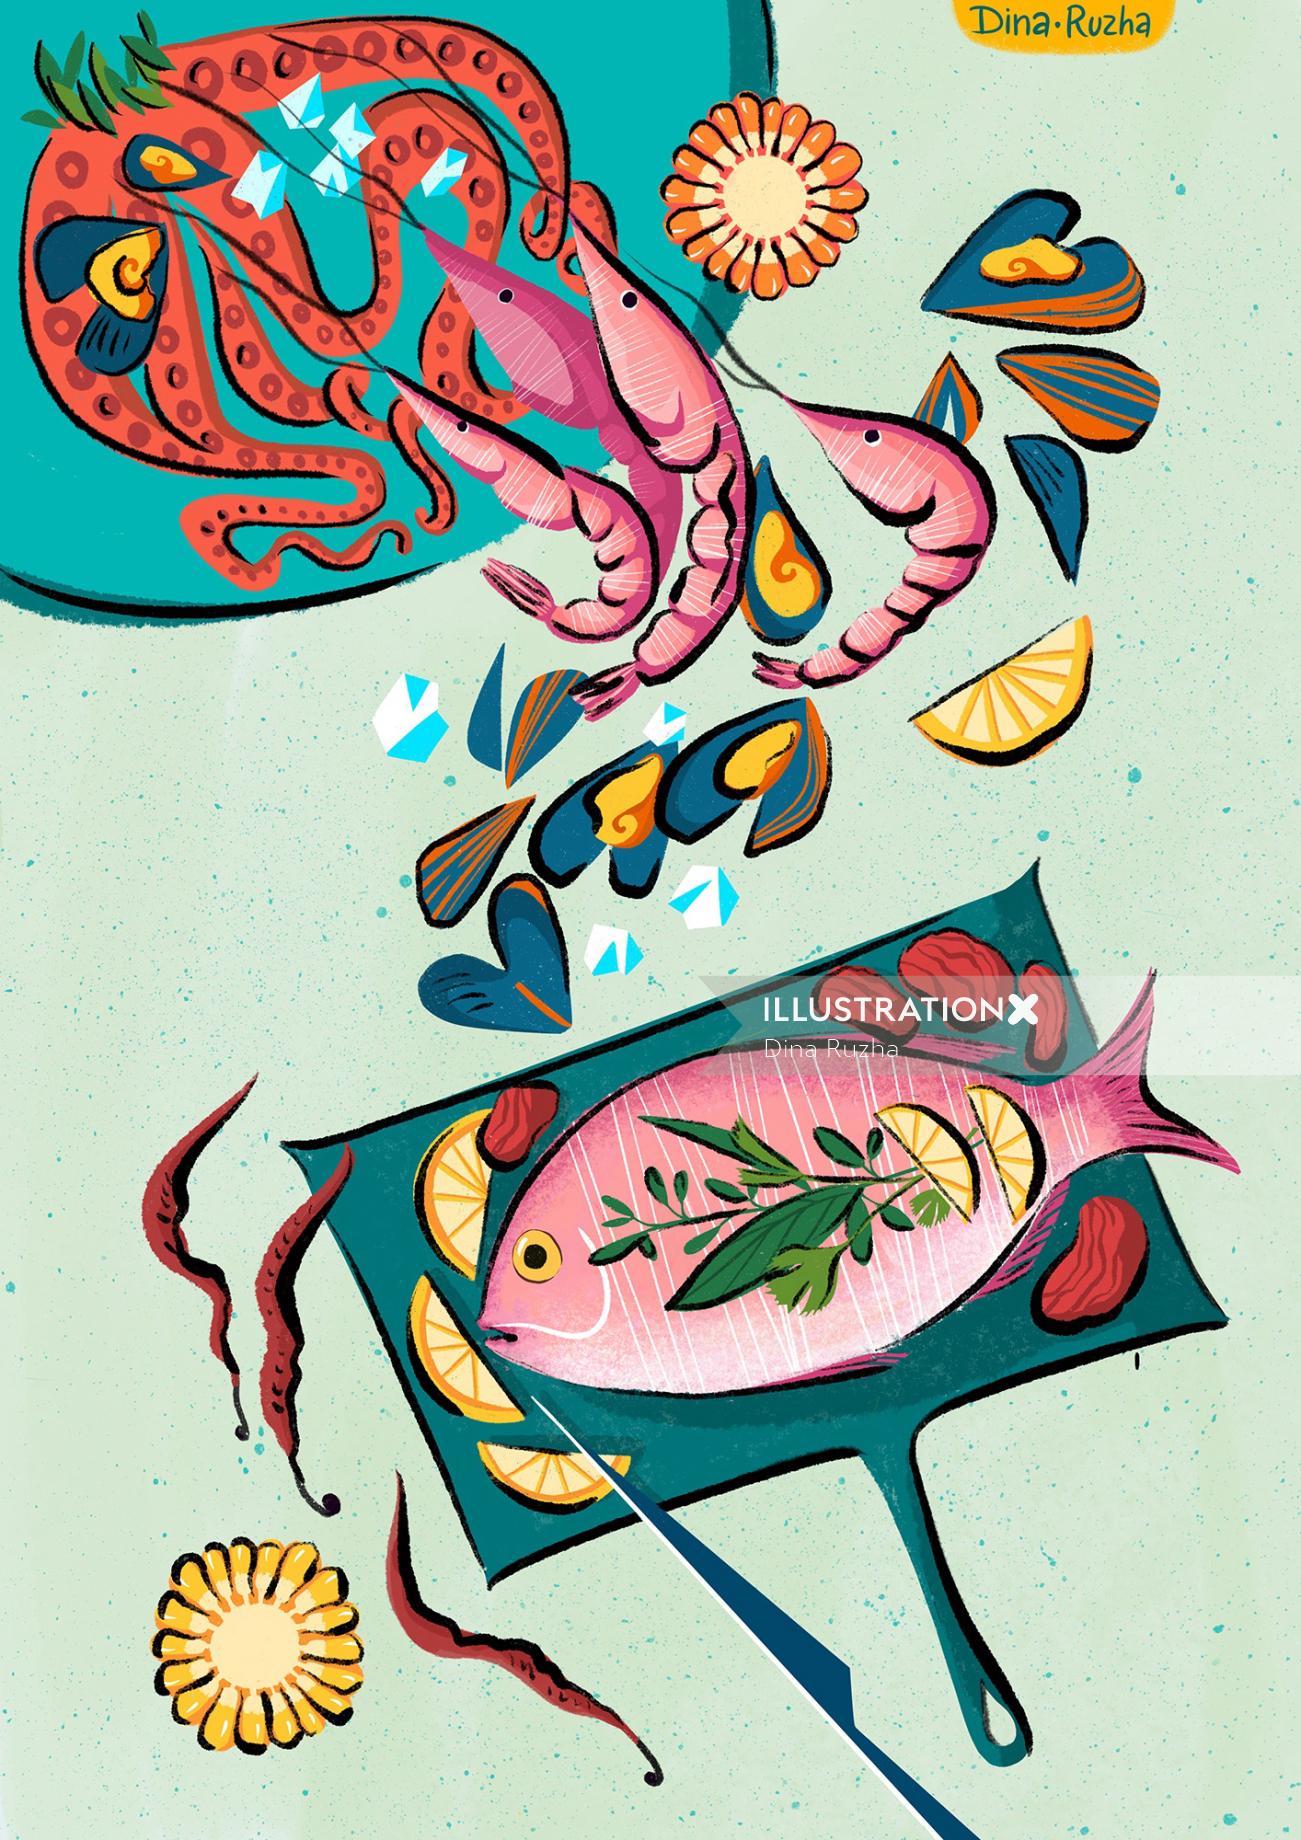 Illustration de fruits de mer par Dina Ruzha